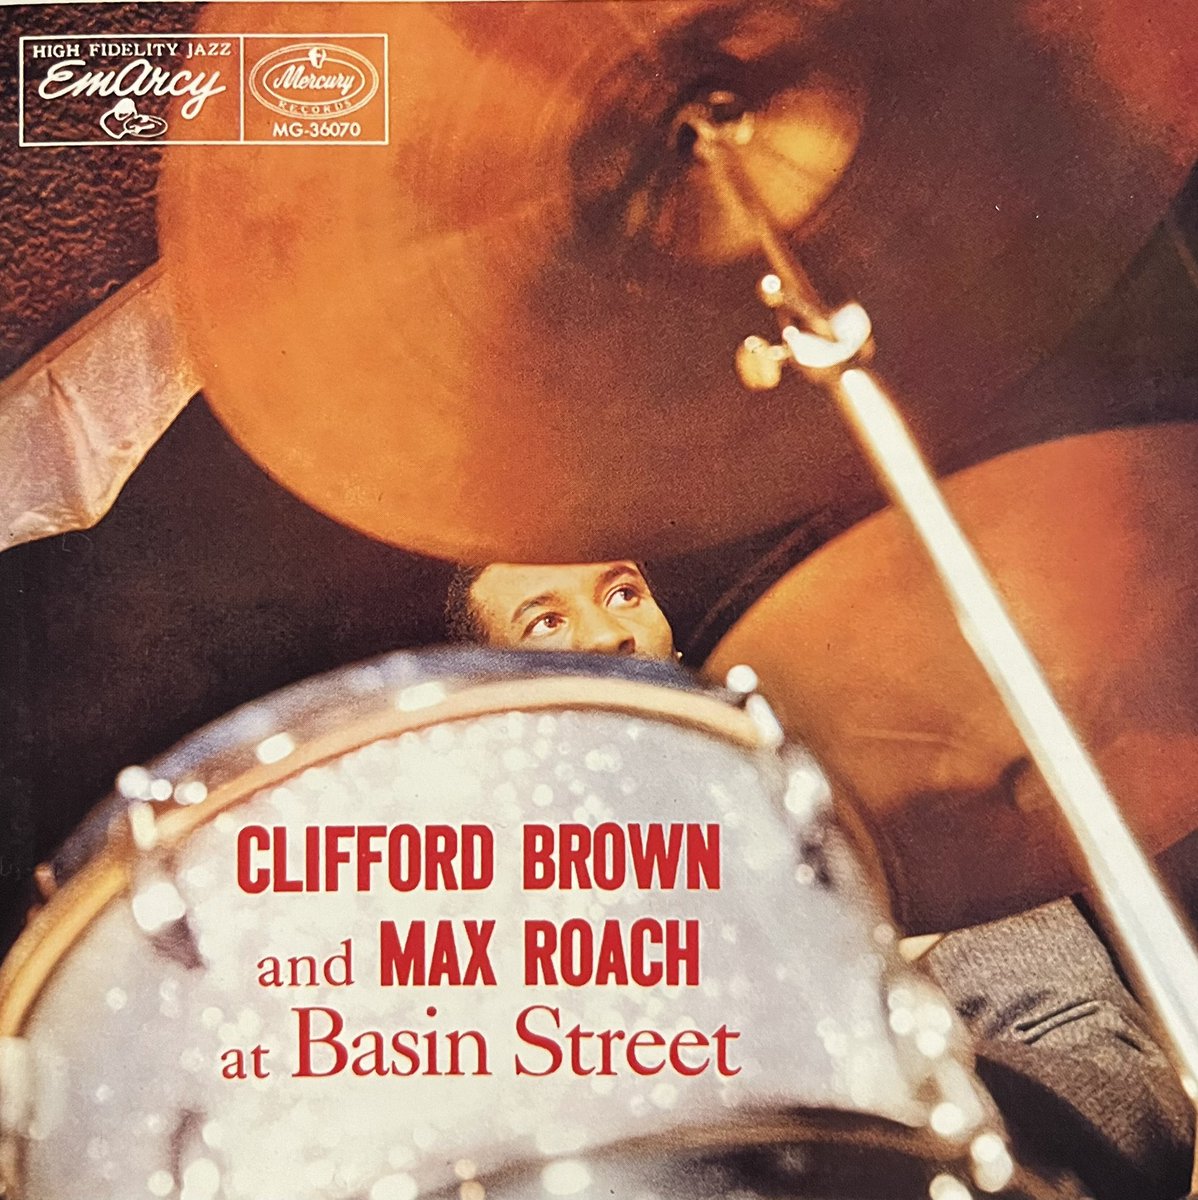 今宵はClifford Brown and Max Roach

#CliffordBrown

#MaxRoach

#SonnyRollins